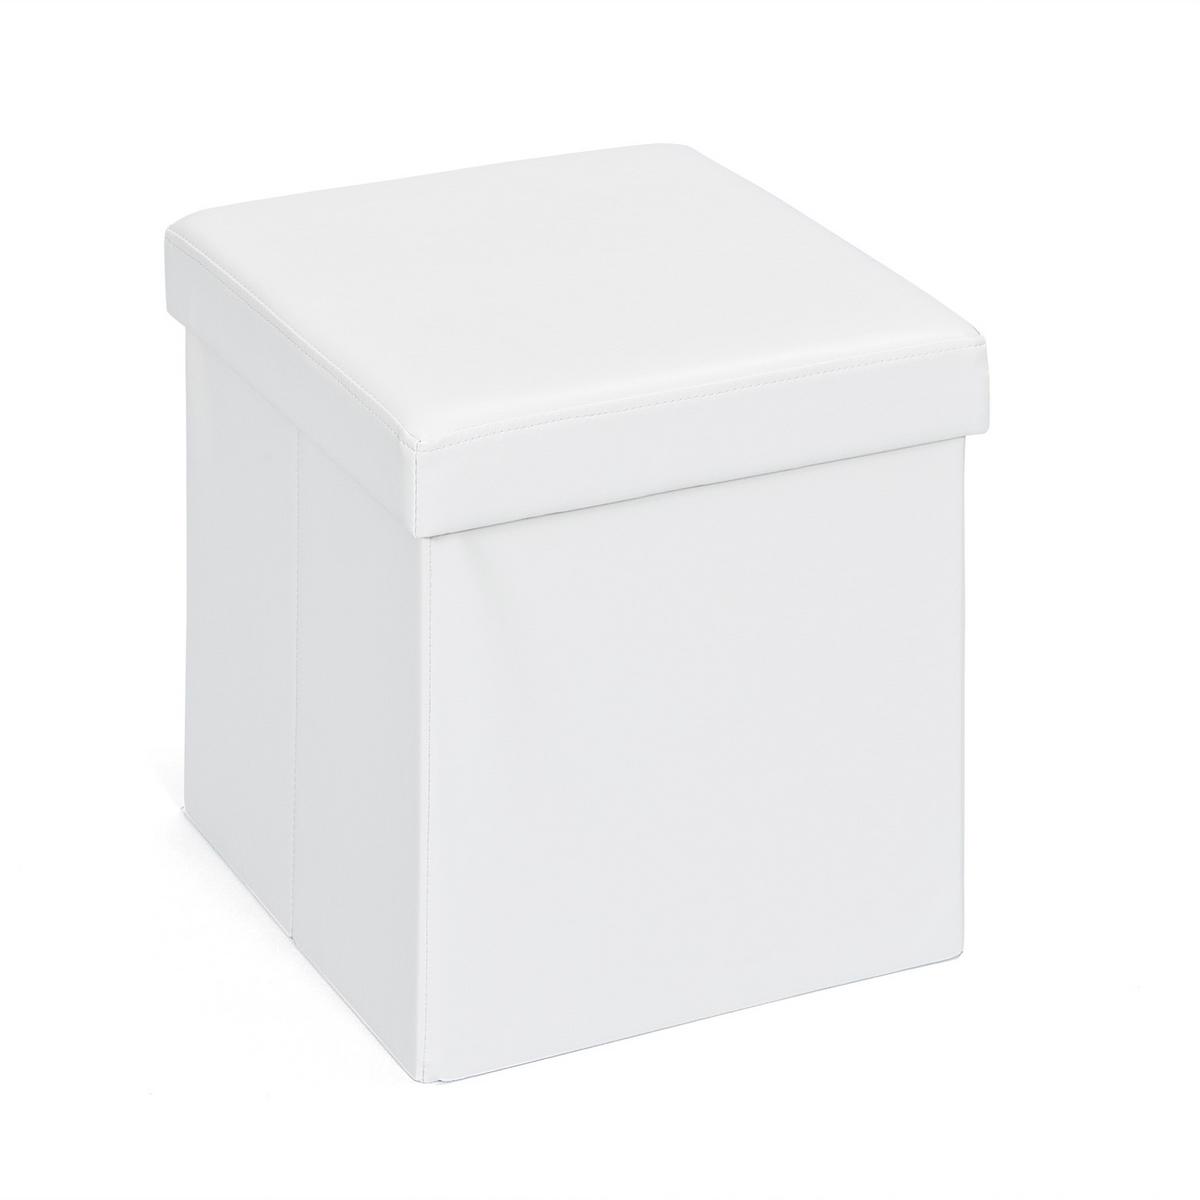 Faltbox mit Deckel – Die 15 besten Produkte im Vergleich - WinTotal